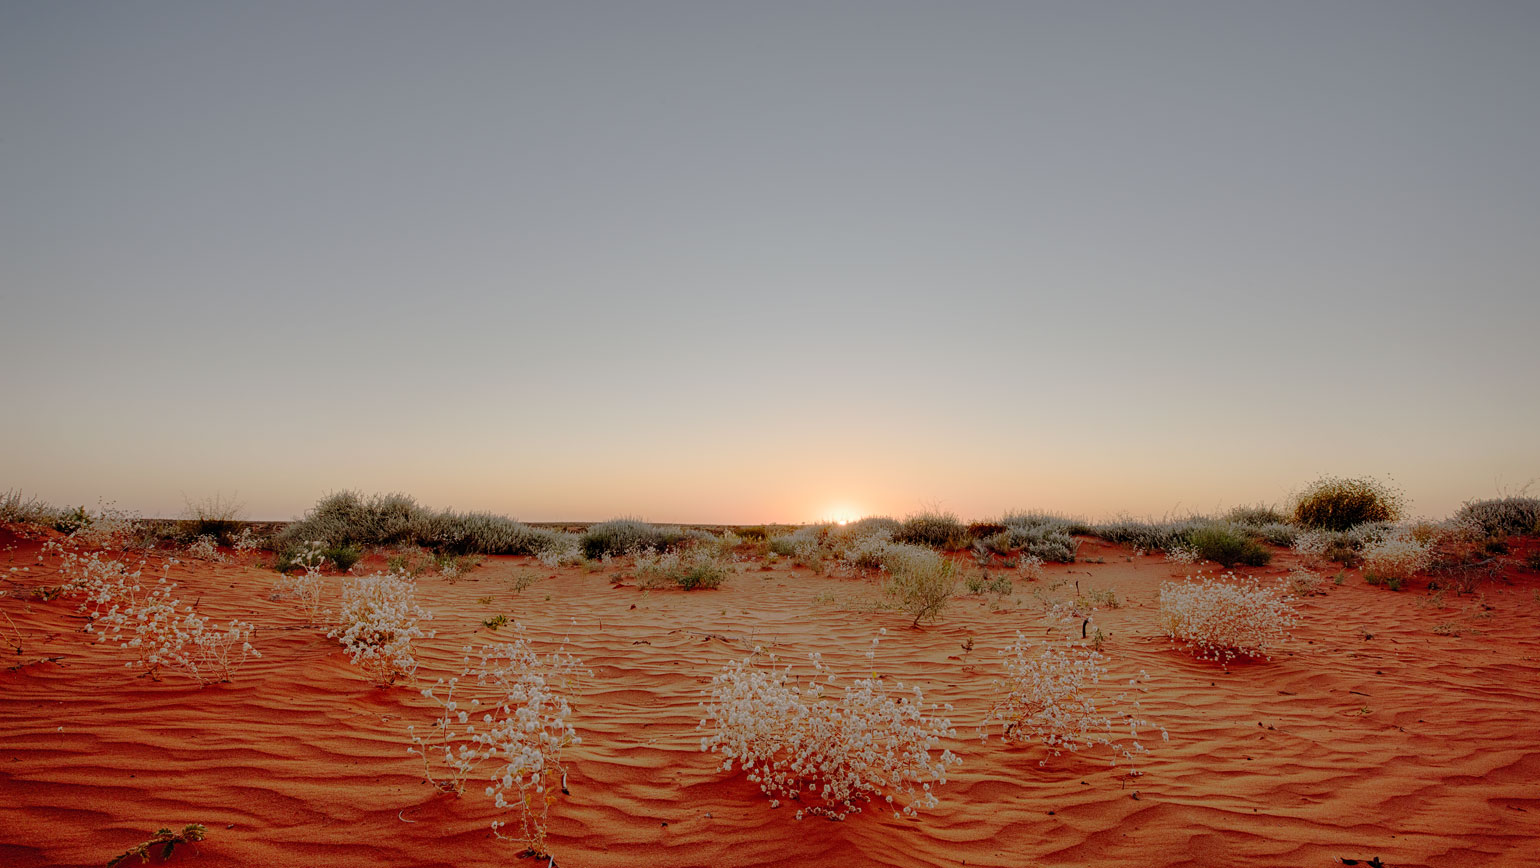 Simpson Desert, Australian outback